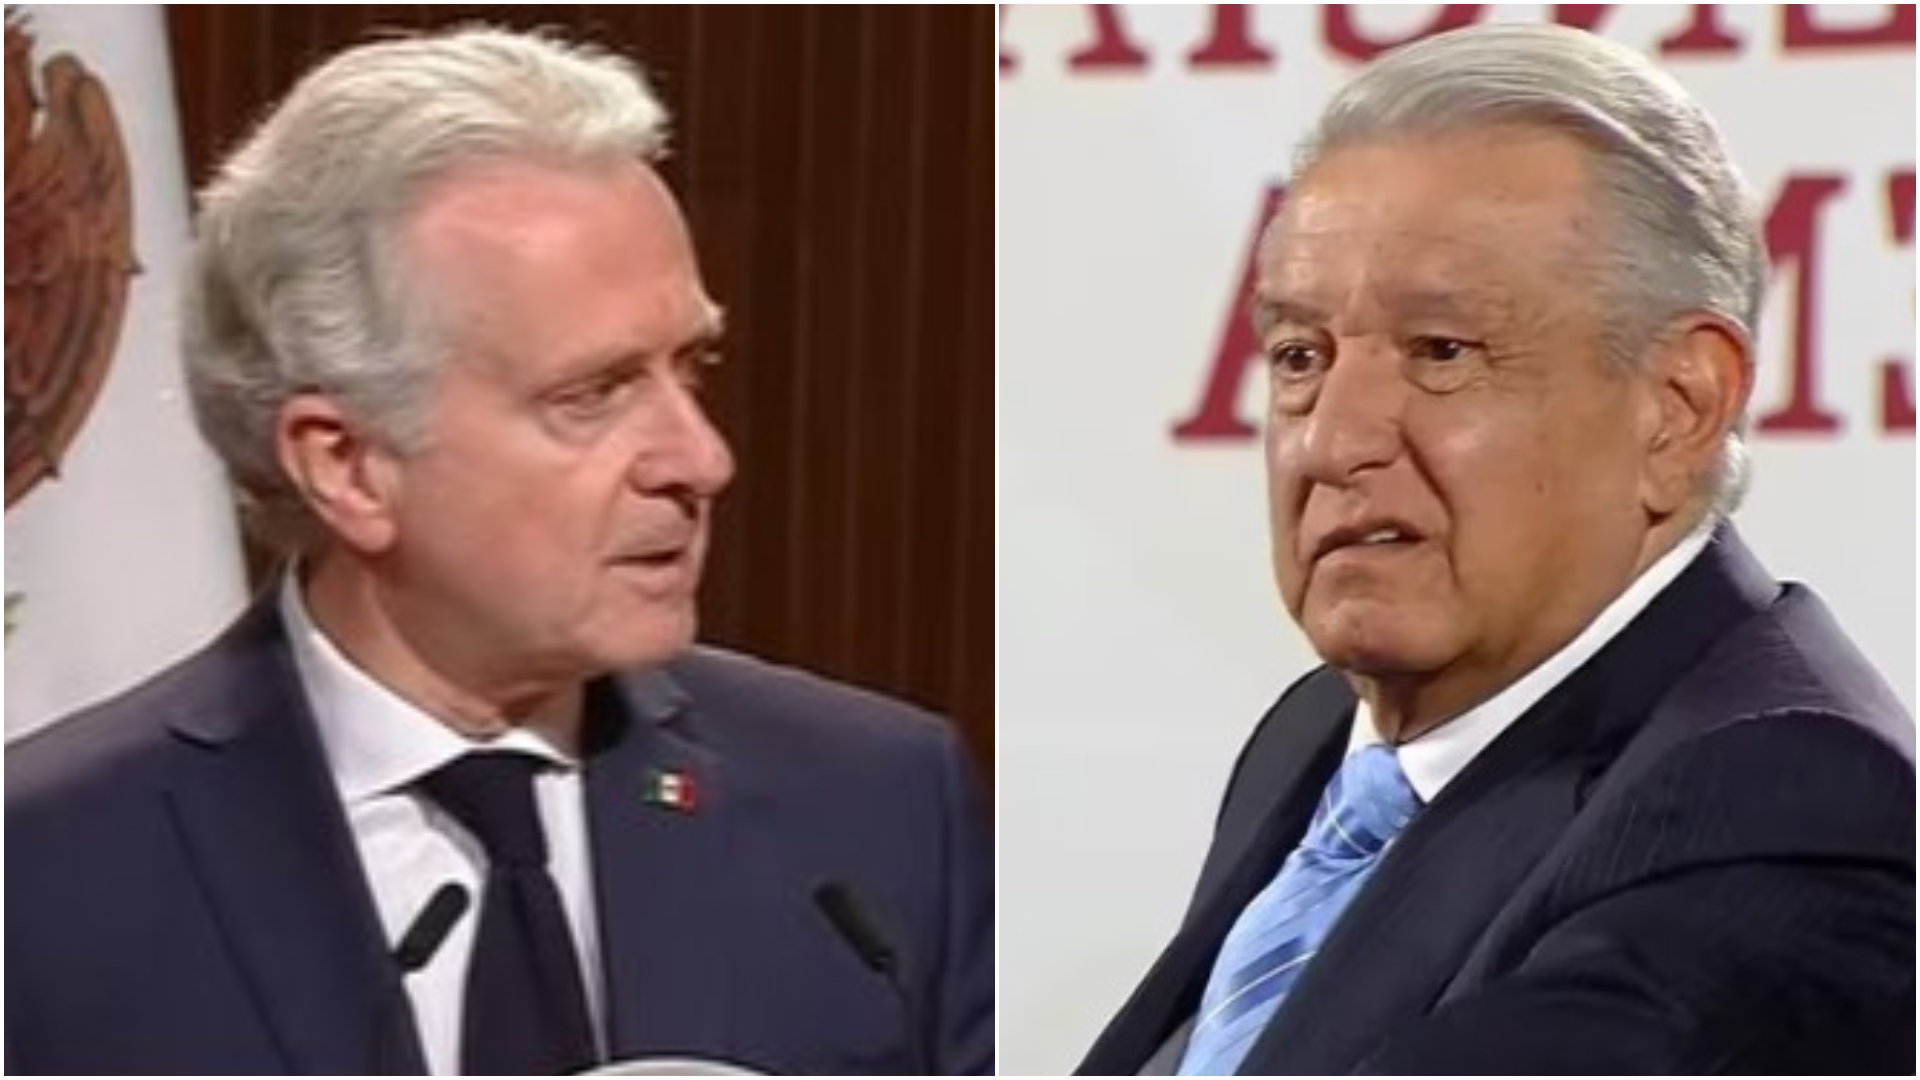 AMLO marchará hacía el Zócalo (Andrés Manuel López Obrador y Gobierno de México)